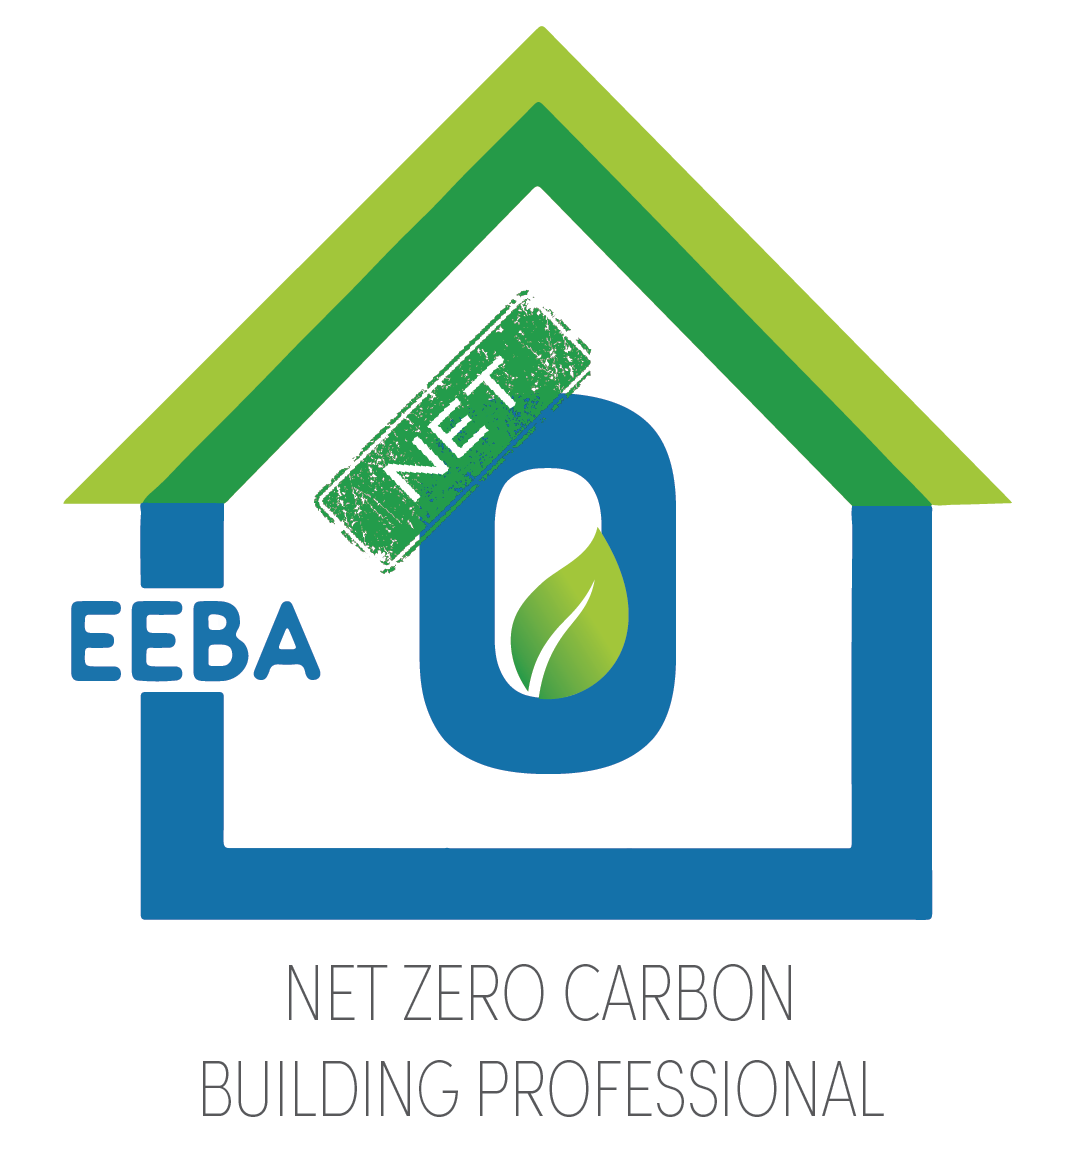 Net Zero Carbon Building Professional